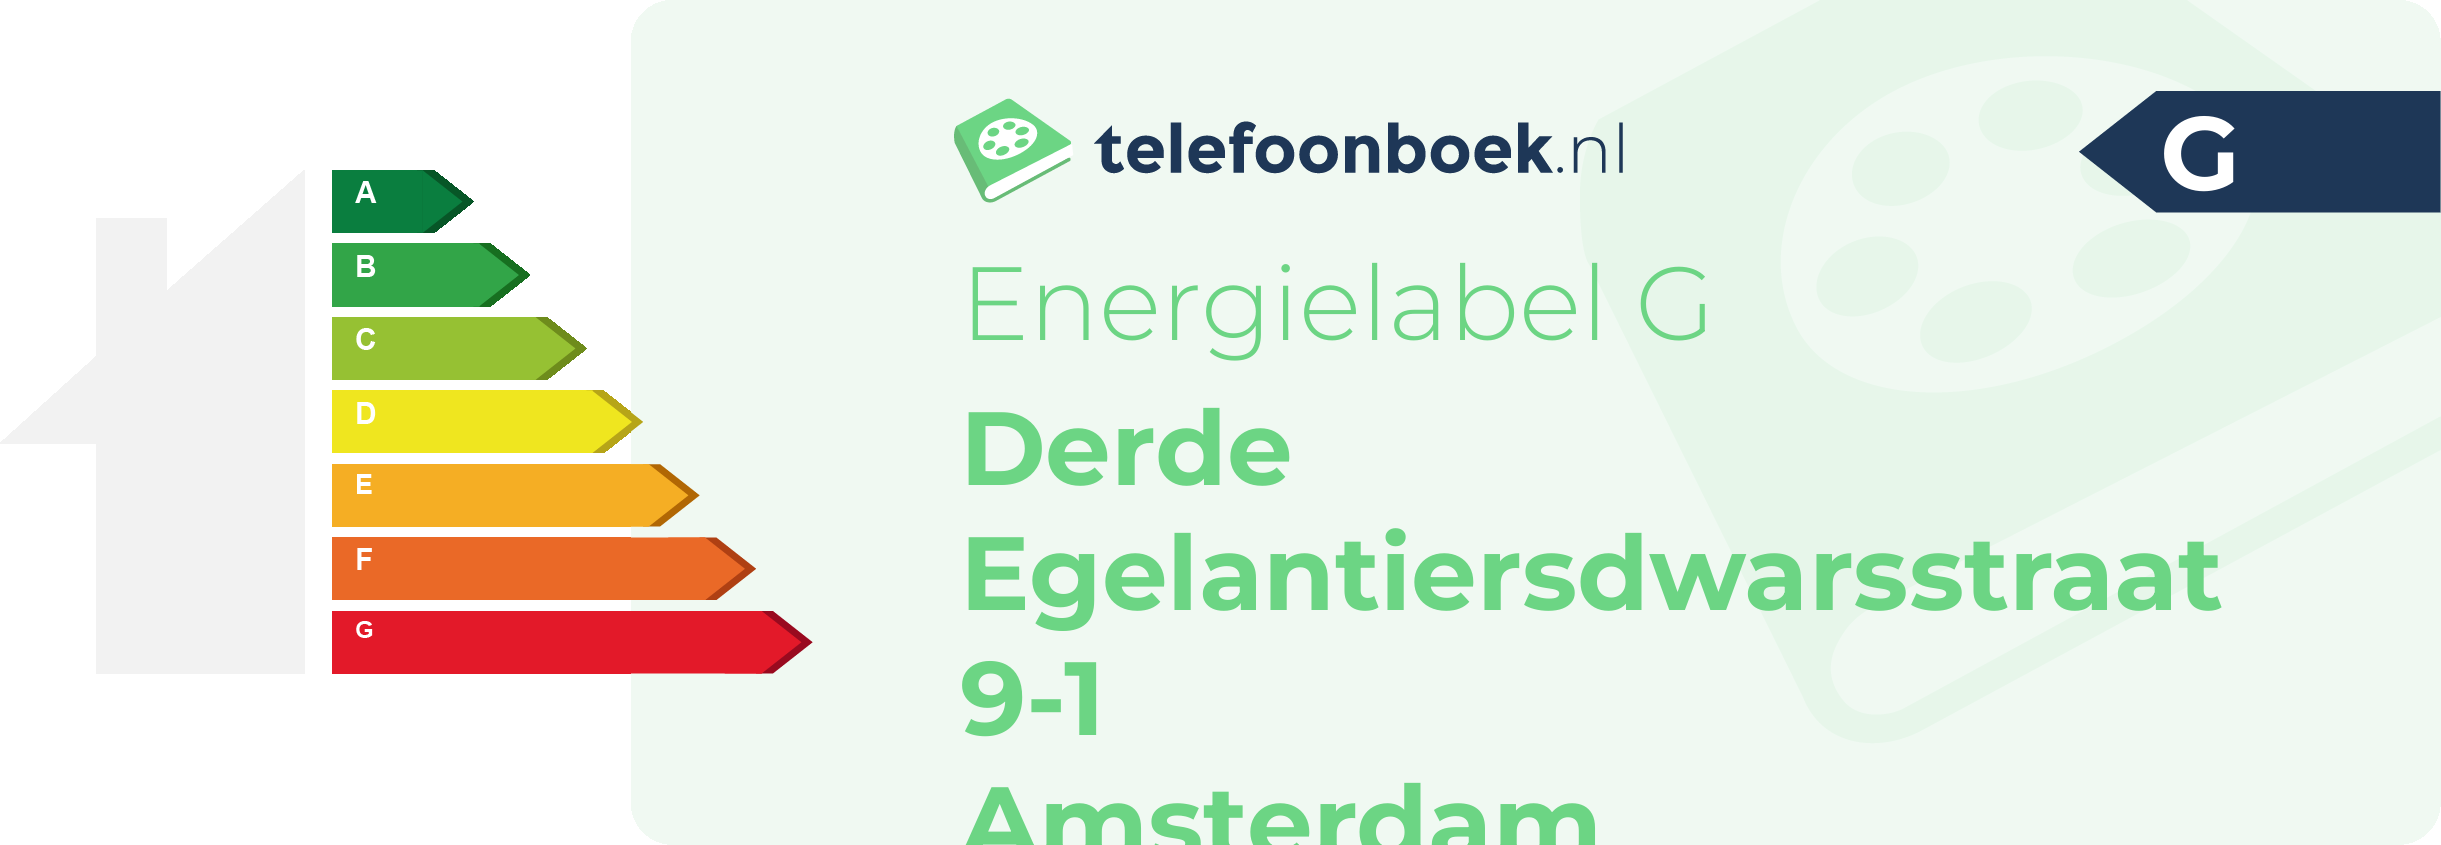 Energielabel Derde Egelantiersdwarsstraat 9-1 Amsterdam